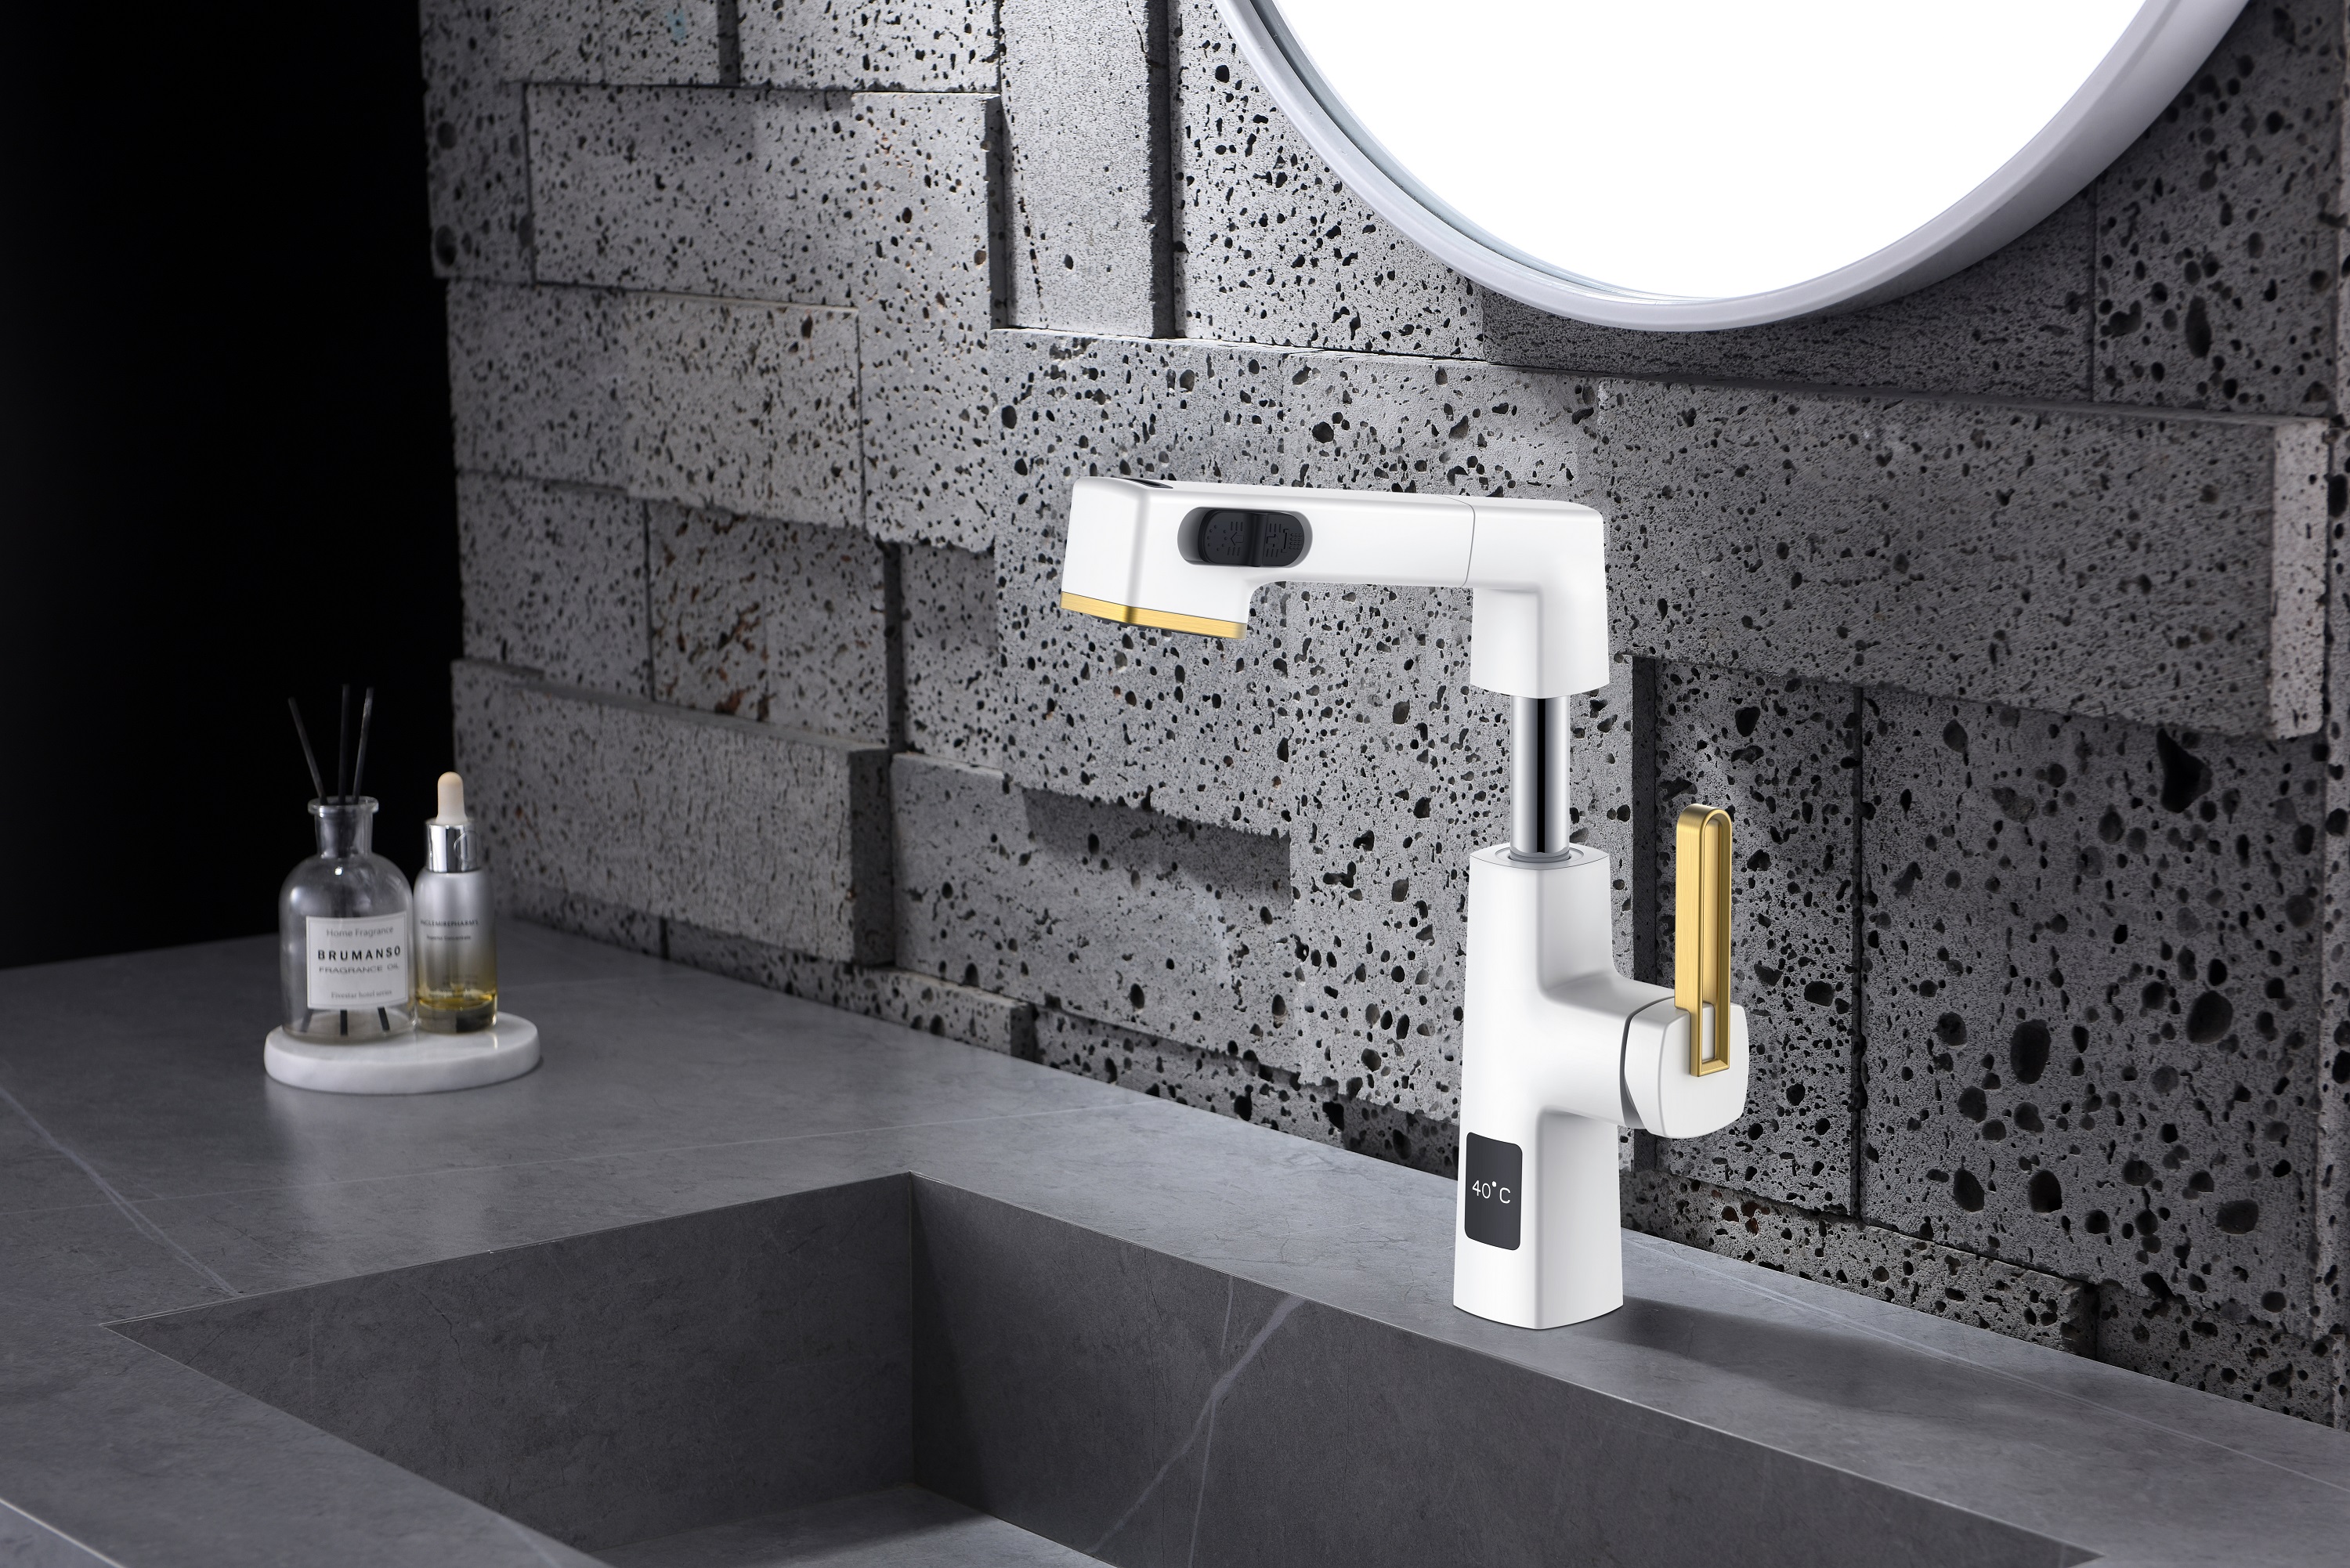  Temperaturanzeige, einzigartiges Design, Weiß und Gold, ausziehbarer Badezimmerhahn, höhenverstellbar